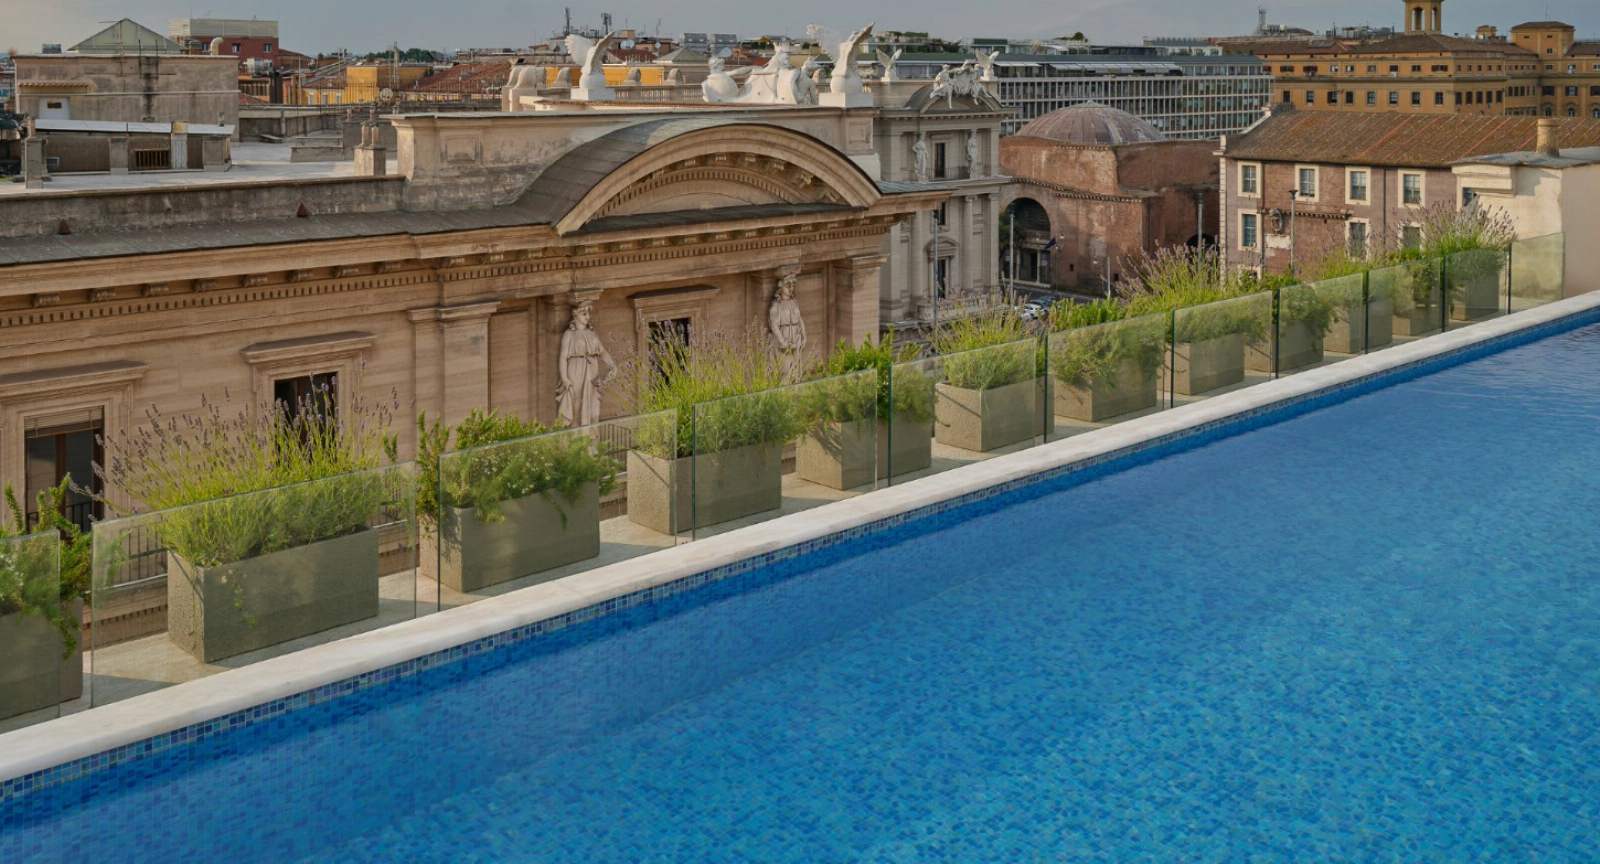 Anantara Palazzo Naiadi Rome Hotel - Rooftop Pool